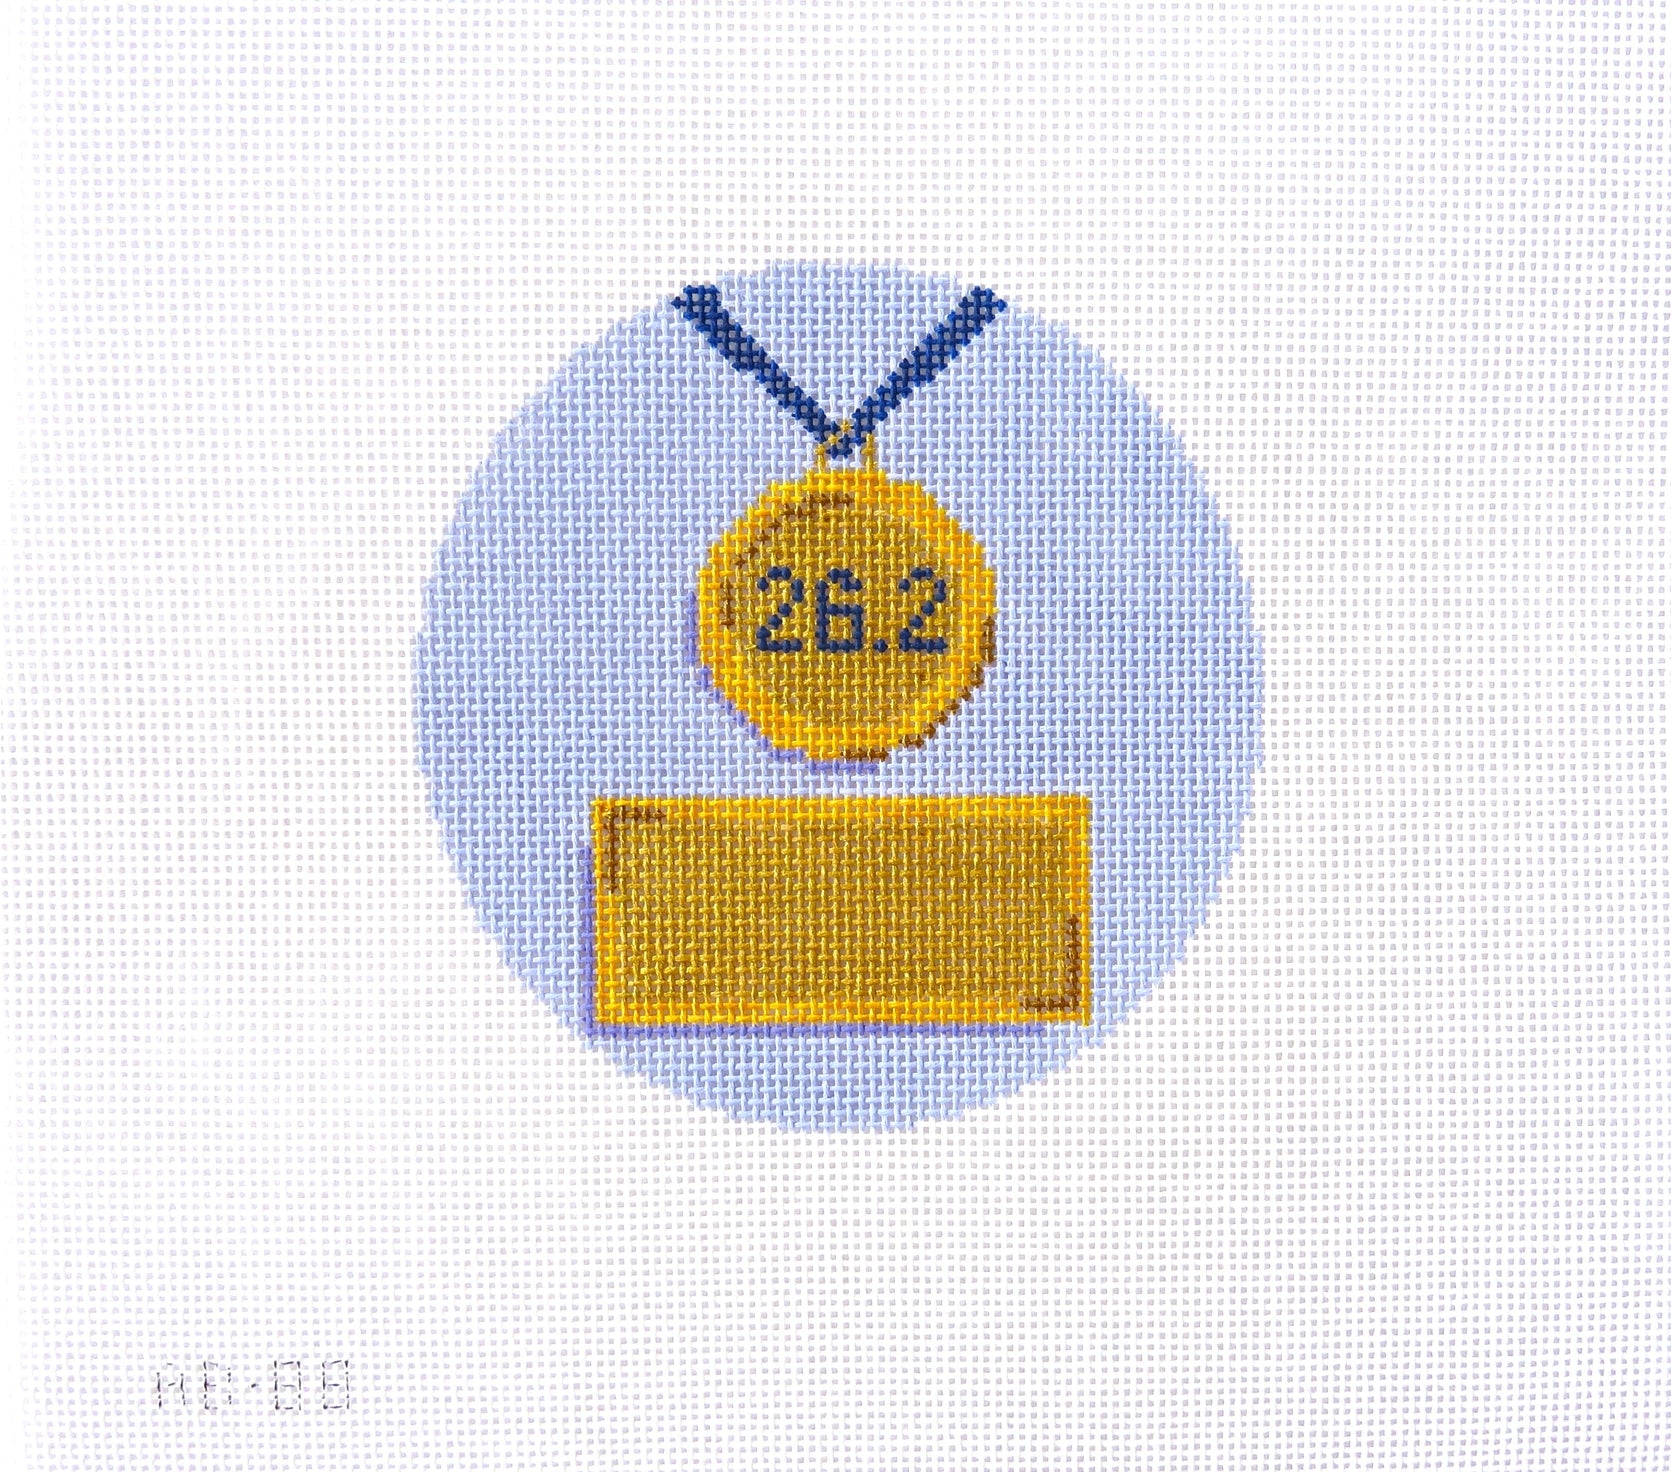 image of Marathon Medal needlepoint